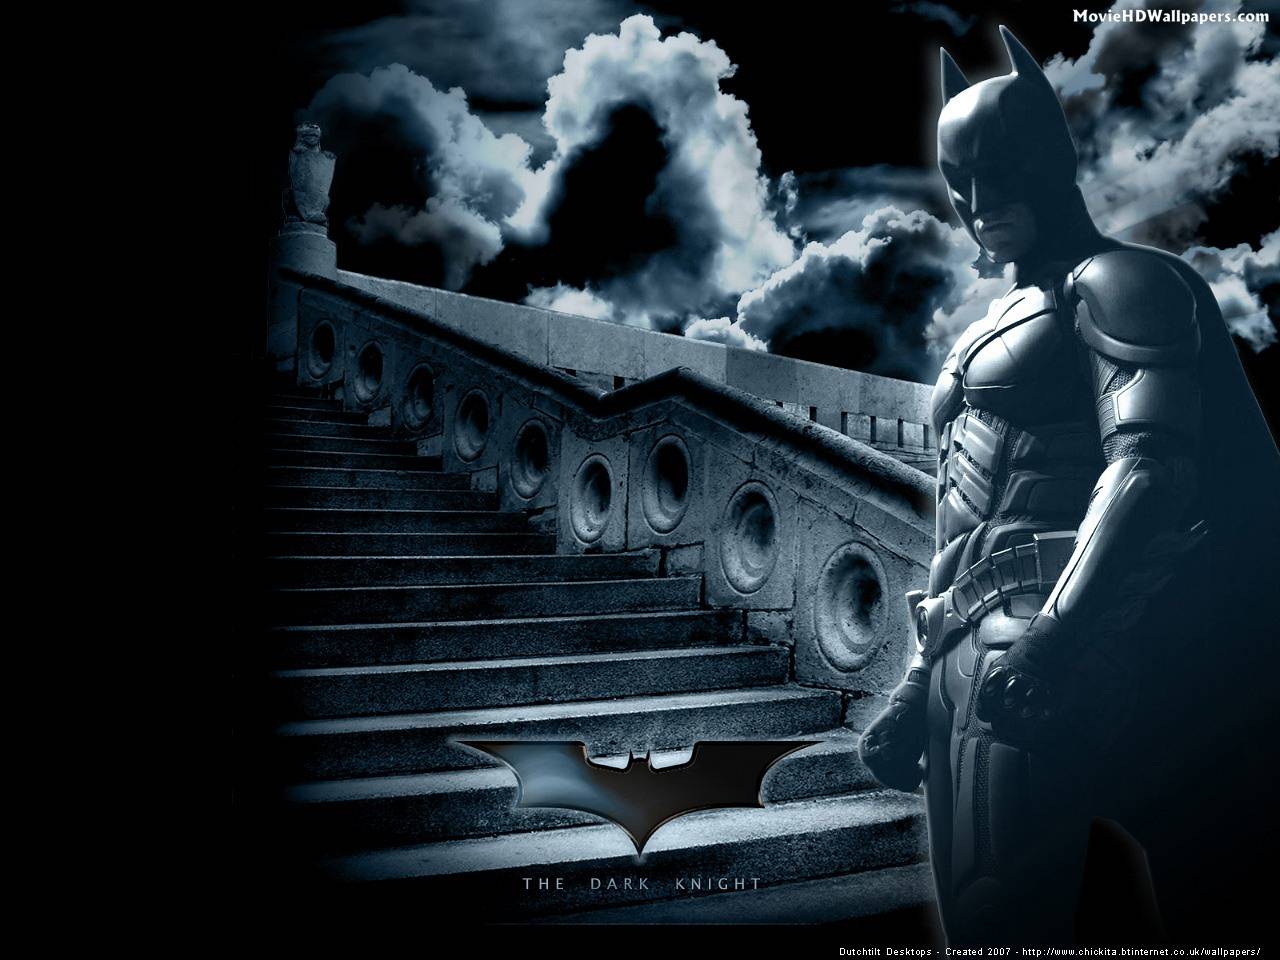 Batman The Dark Knight (2008) HD Wallpaper | Movie HD Wallpapers